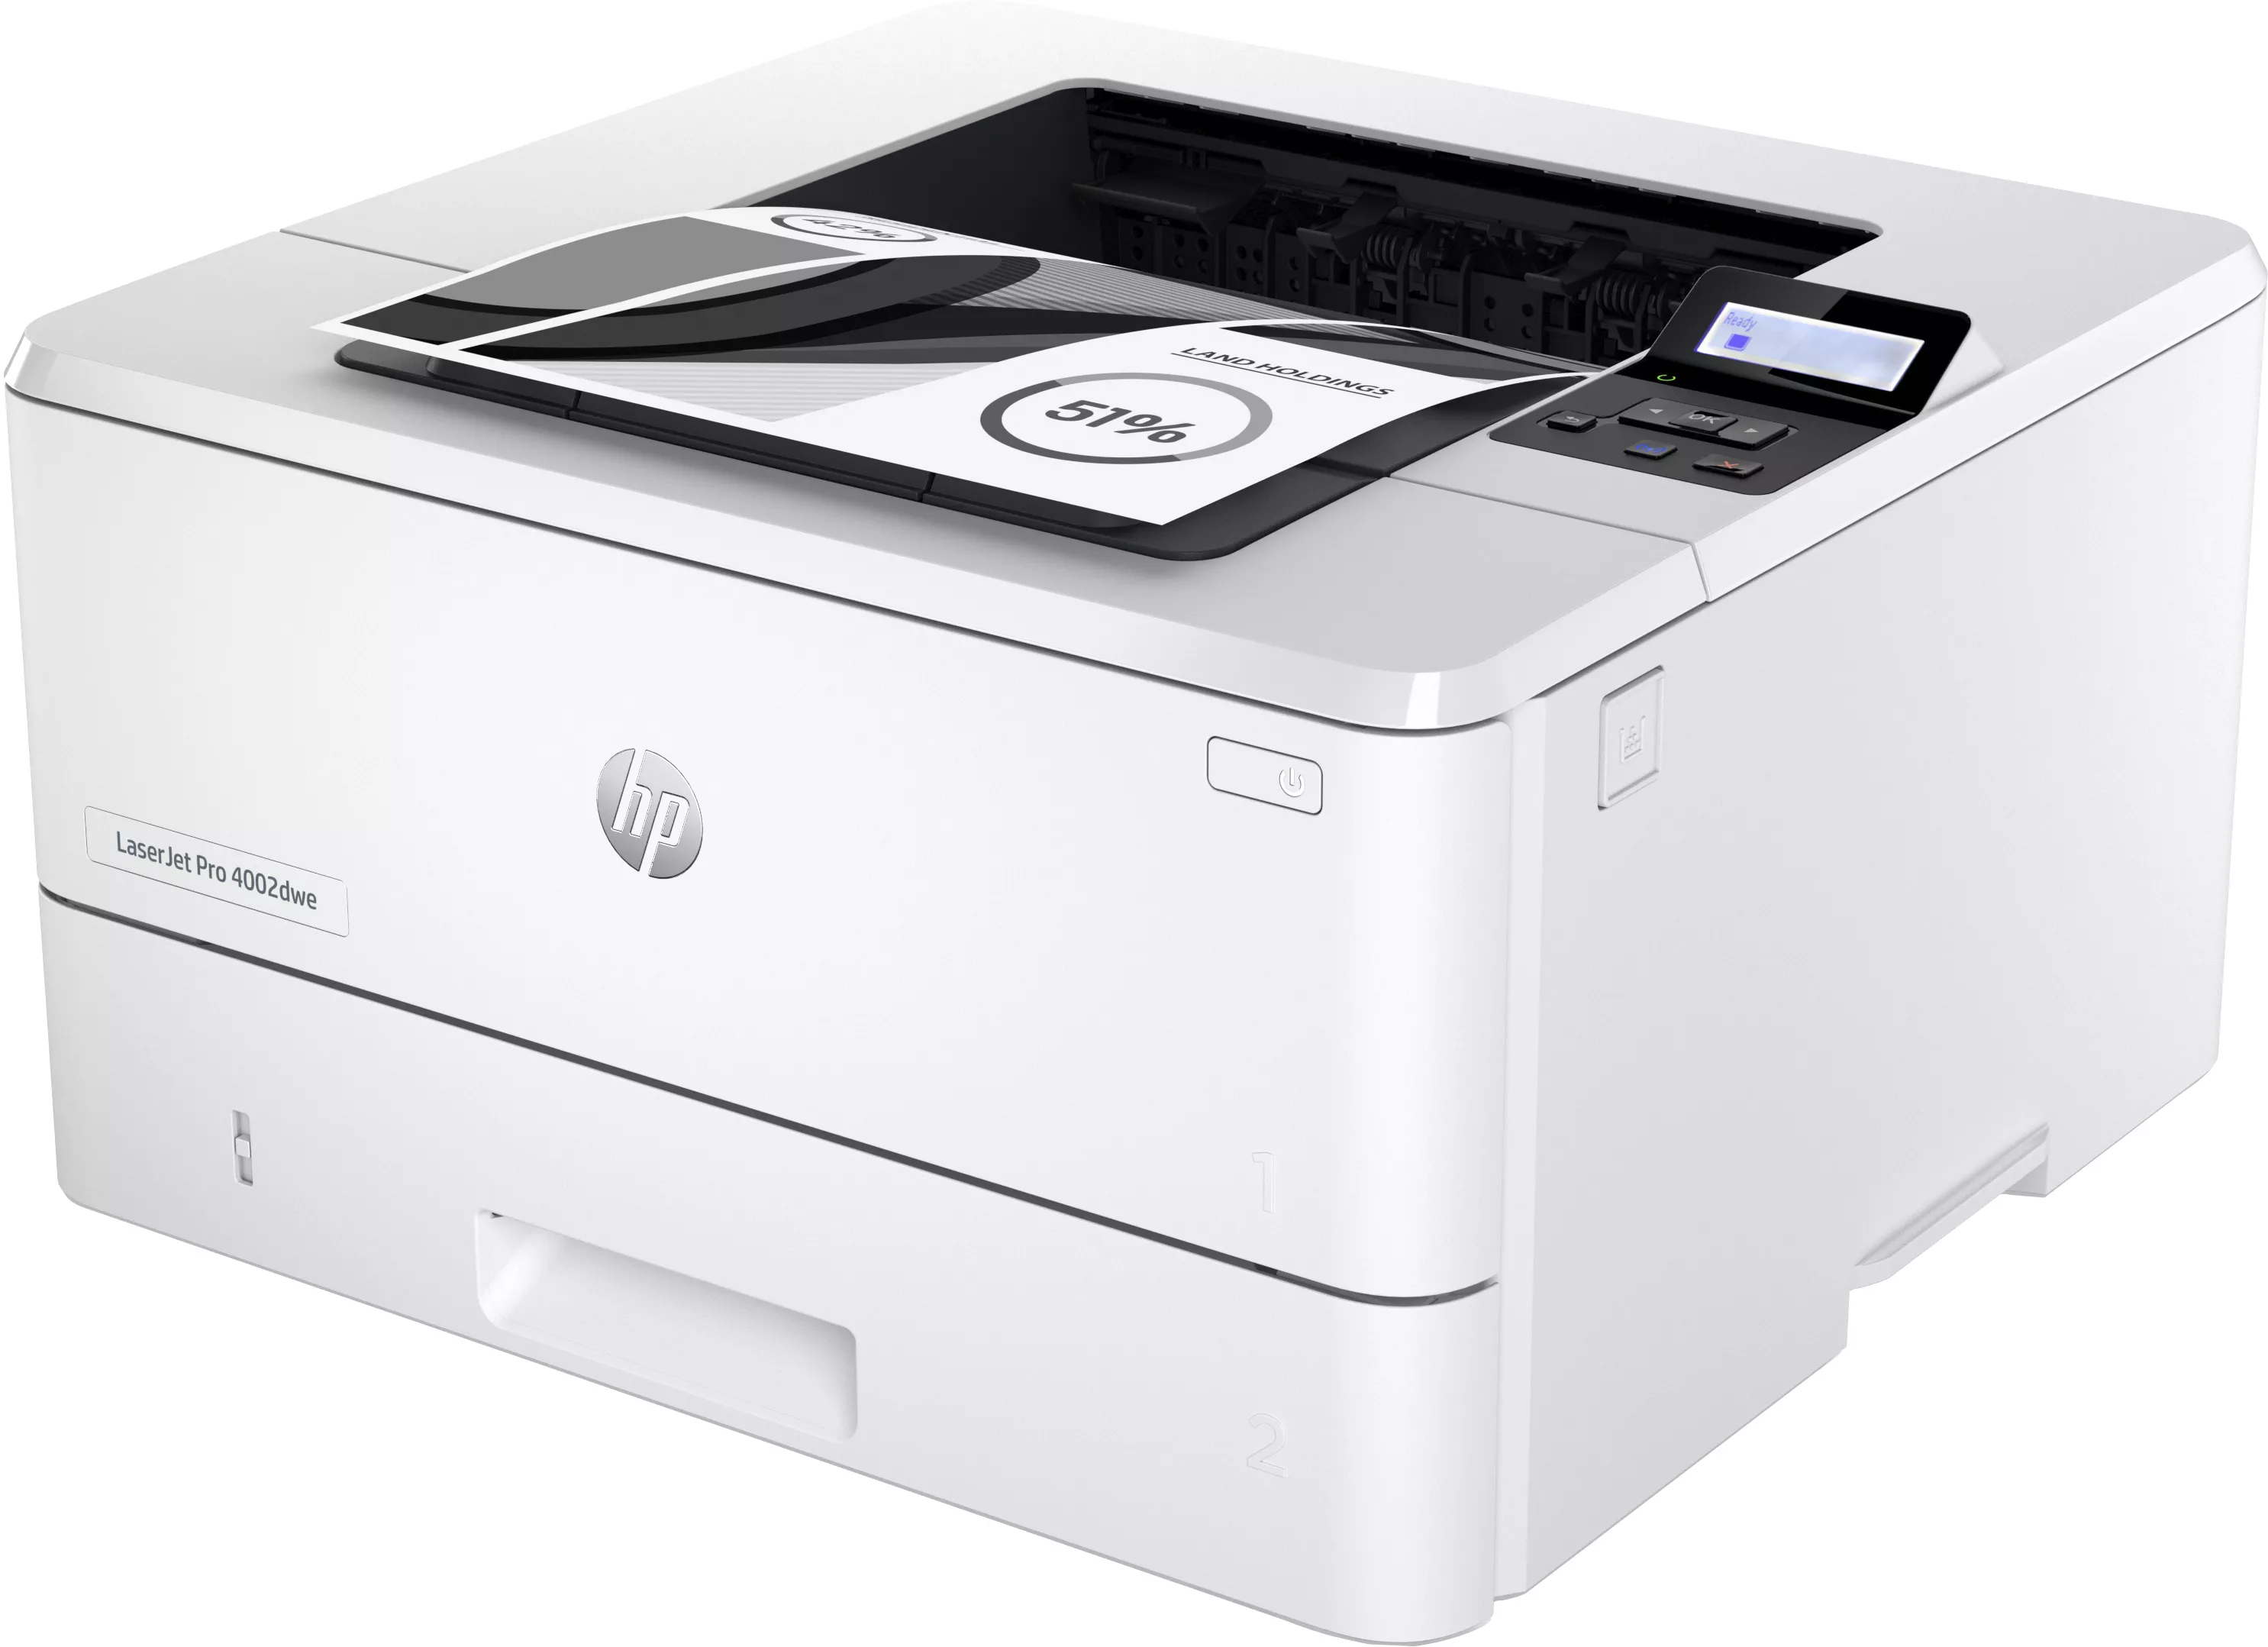 Vente HP LaserJet Pro 4002dwe Printer up to 40ppm HP au meilleur prix - visuel 2